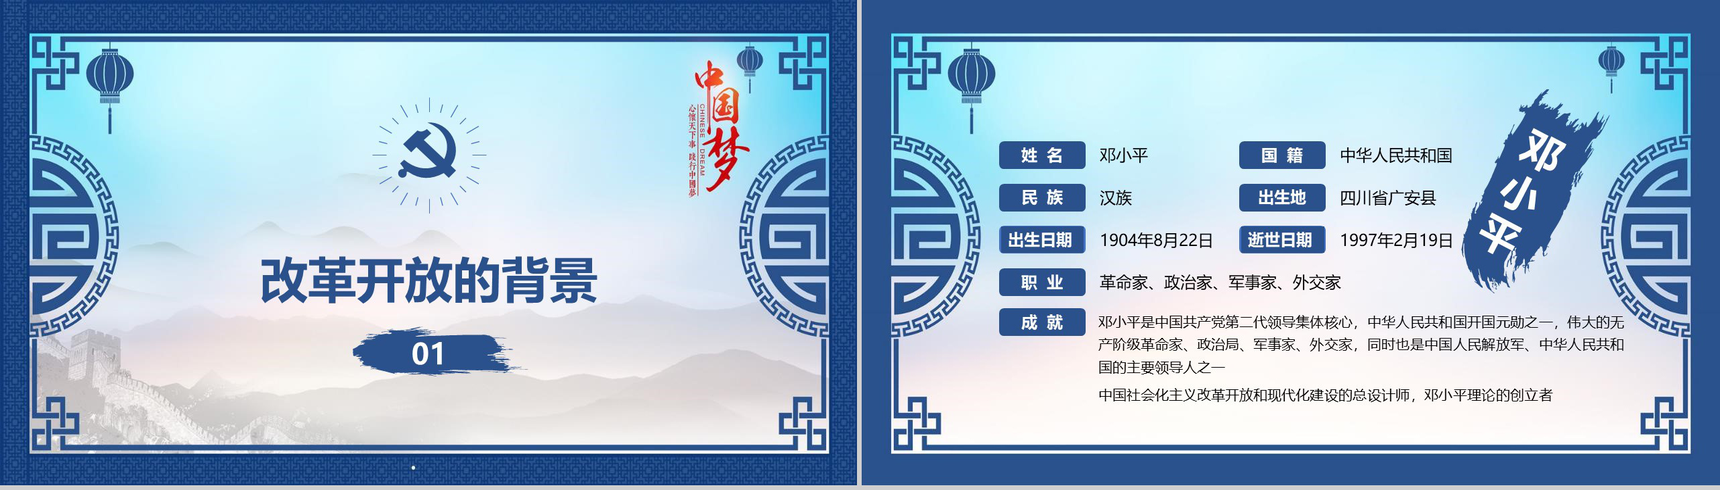 山水画中国梦改革开放40周年改革PPT模板-3